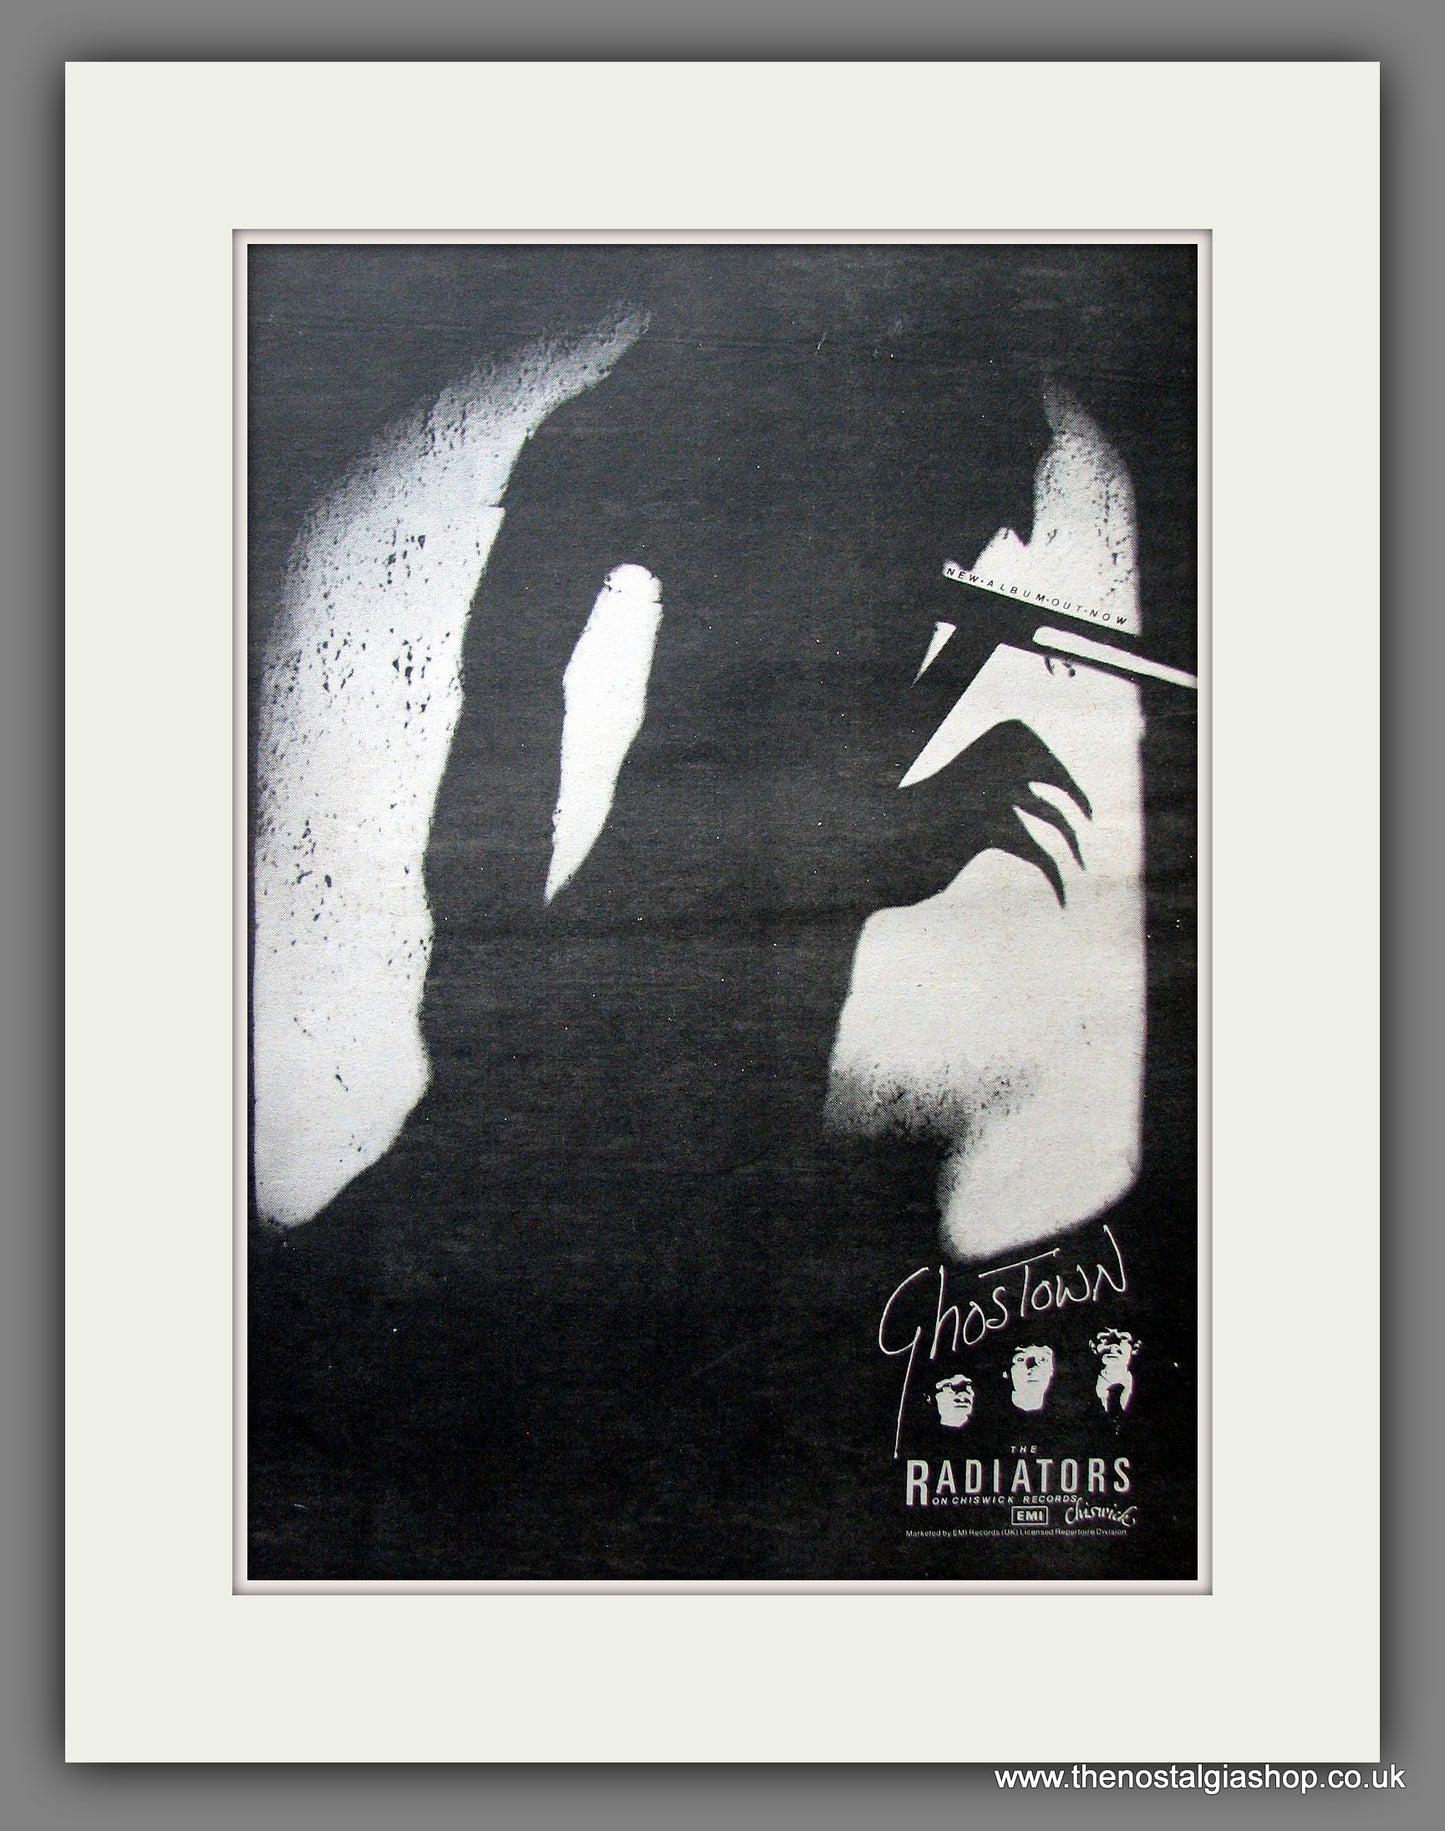 Radiators (The) Ghostown. Vintage Advert 1979 (ref AD13978)